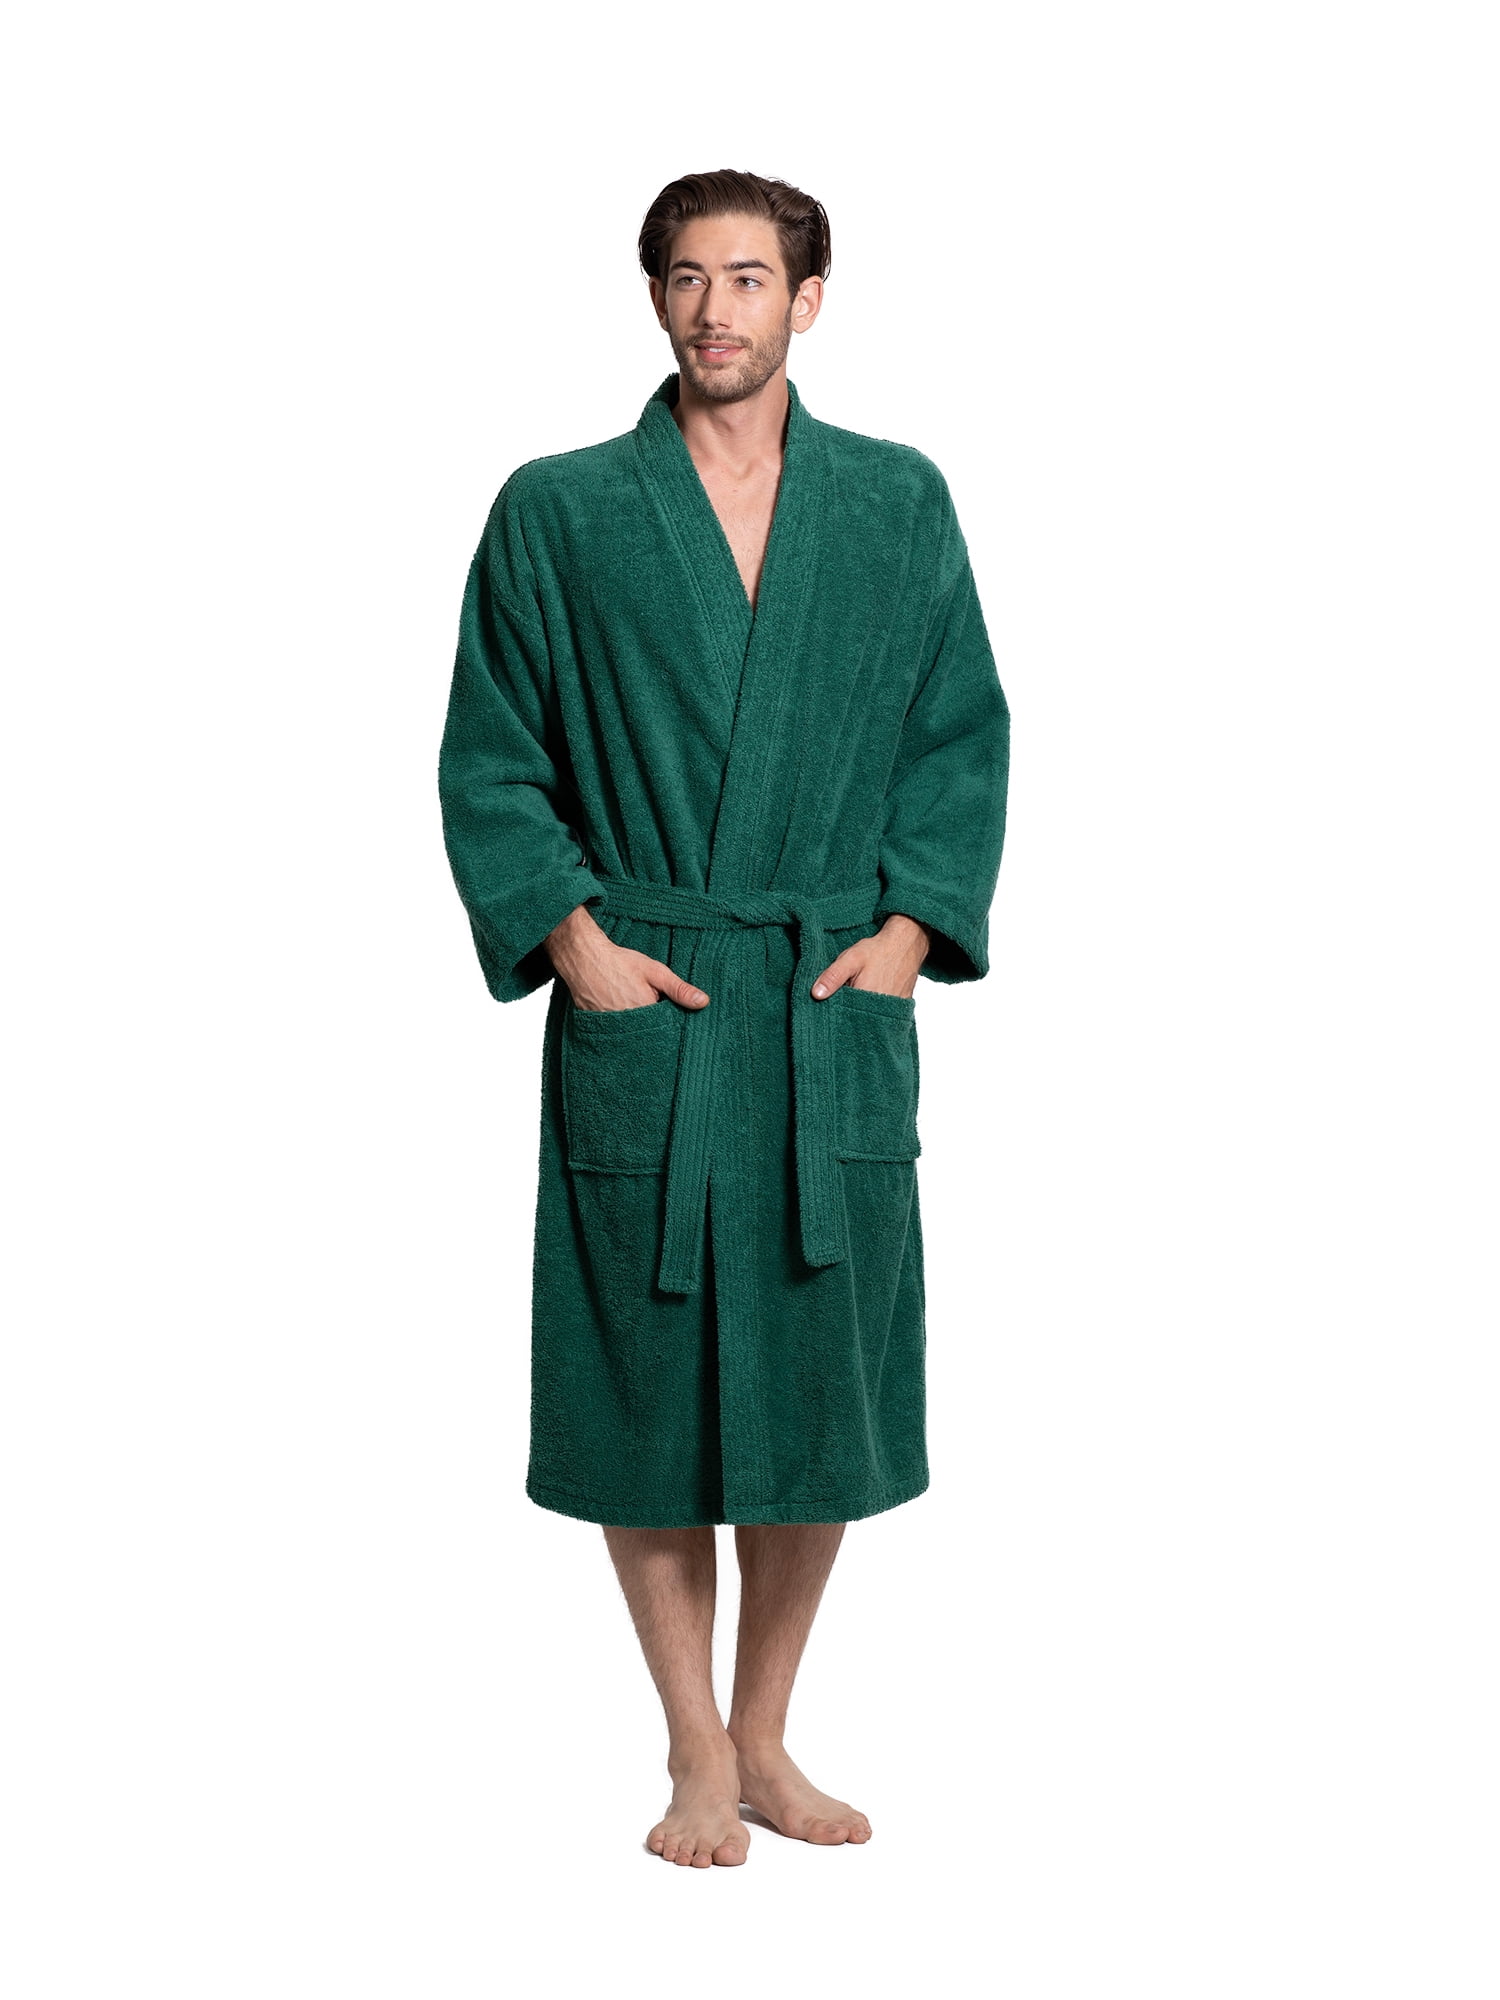 Turkuoise Men's Terry Cloth Robe 100% Premium Turkish Cotton Terry ...